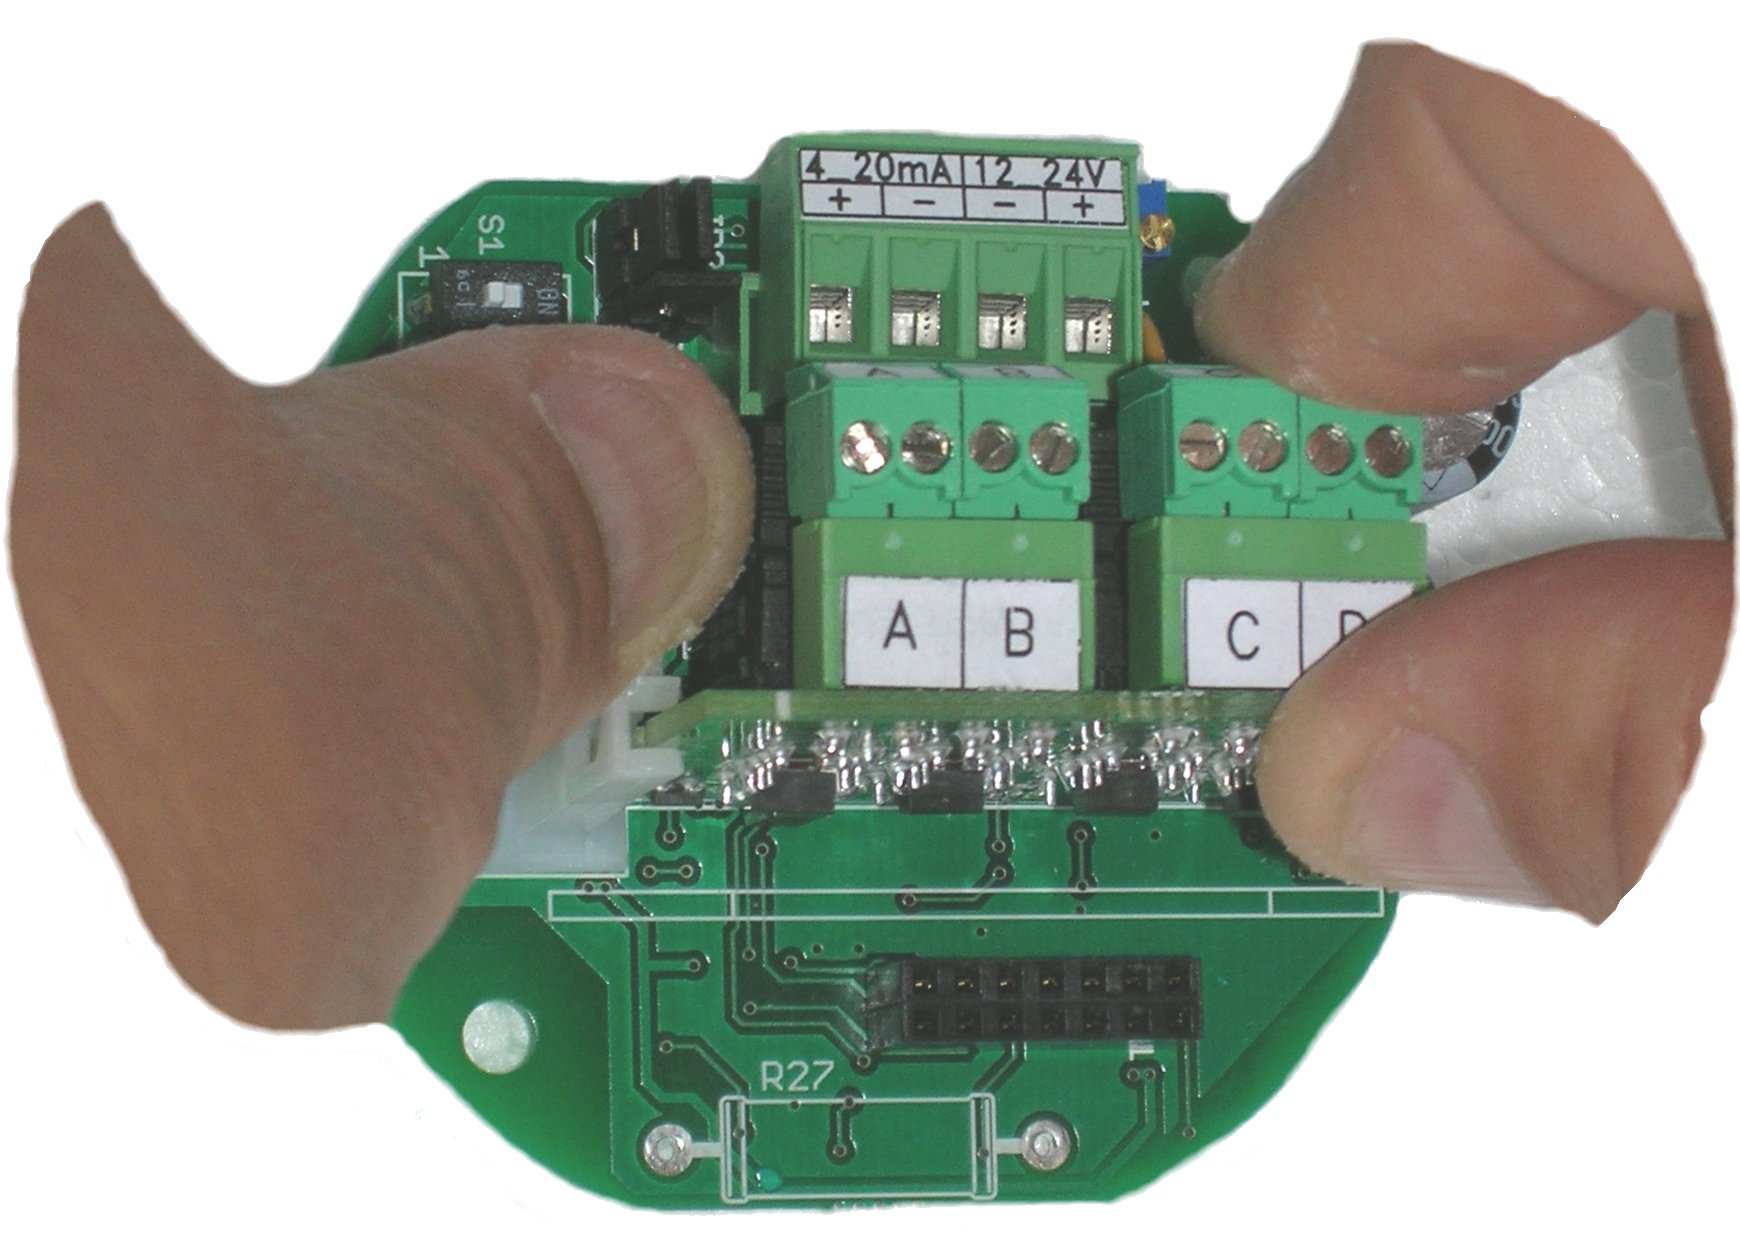 Installazione meccanica della scheda opzionale a relè Sulla scheda elettronica di base è possibile inserire, in un apposito connettore denominato CN3, una scheda con a bordo n.